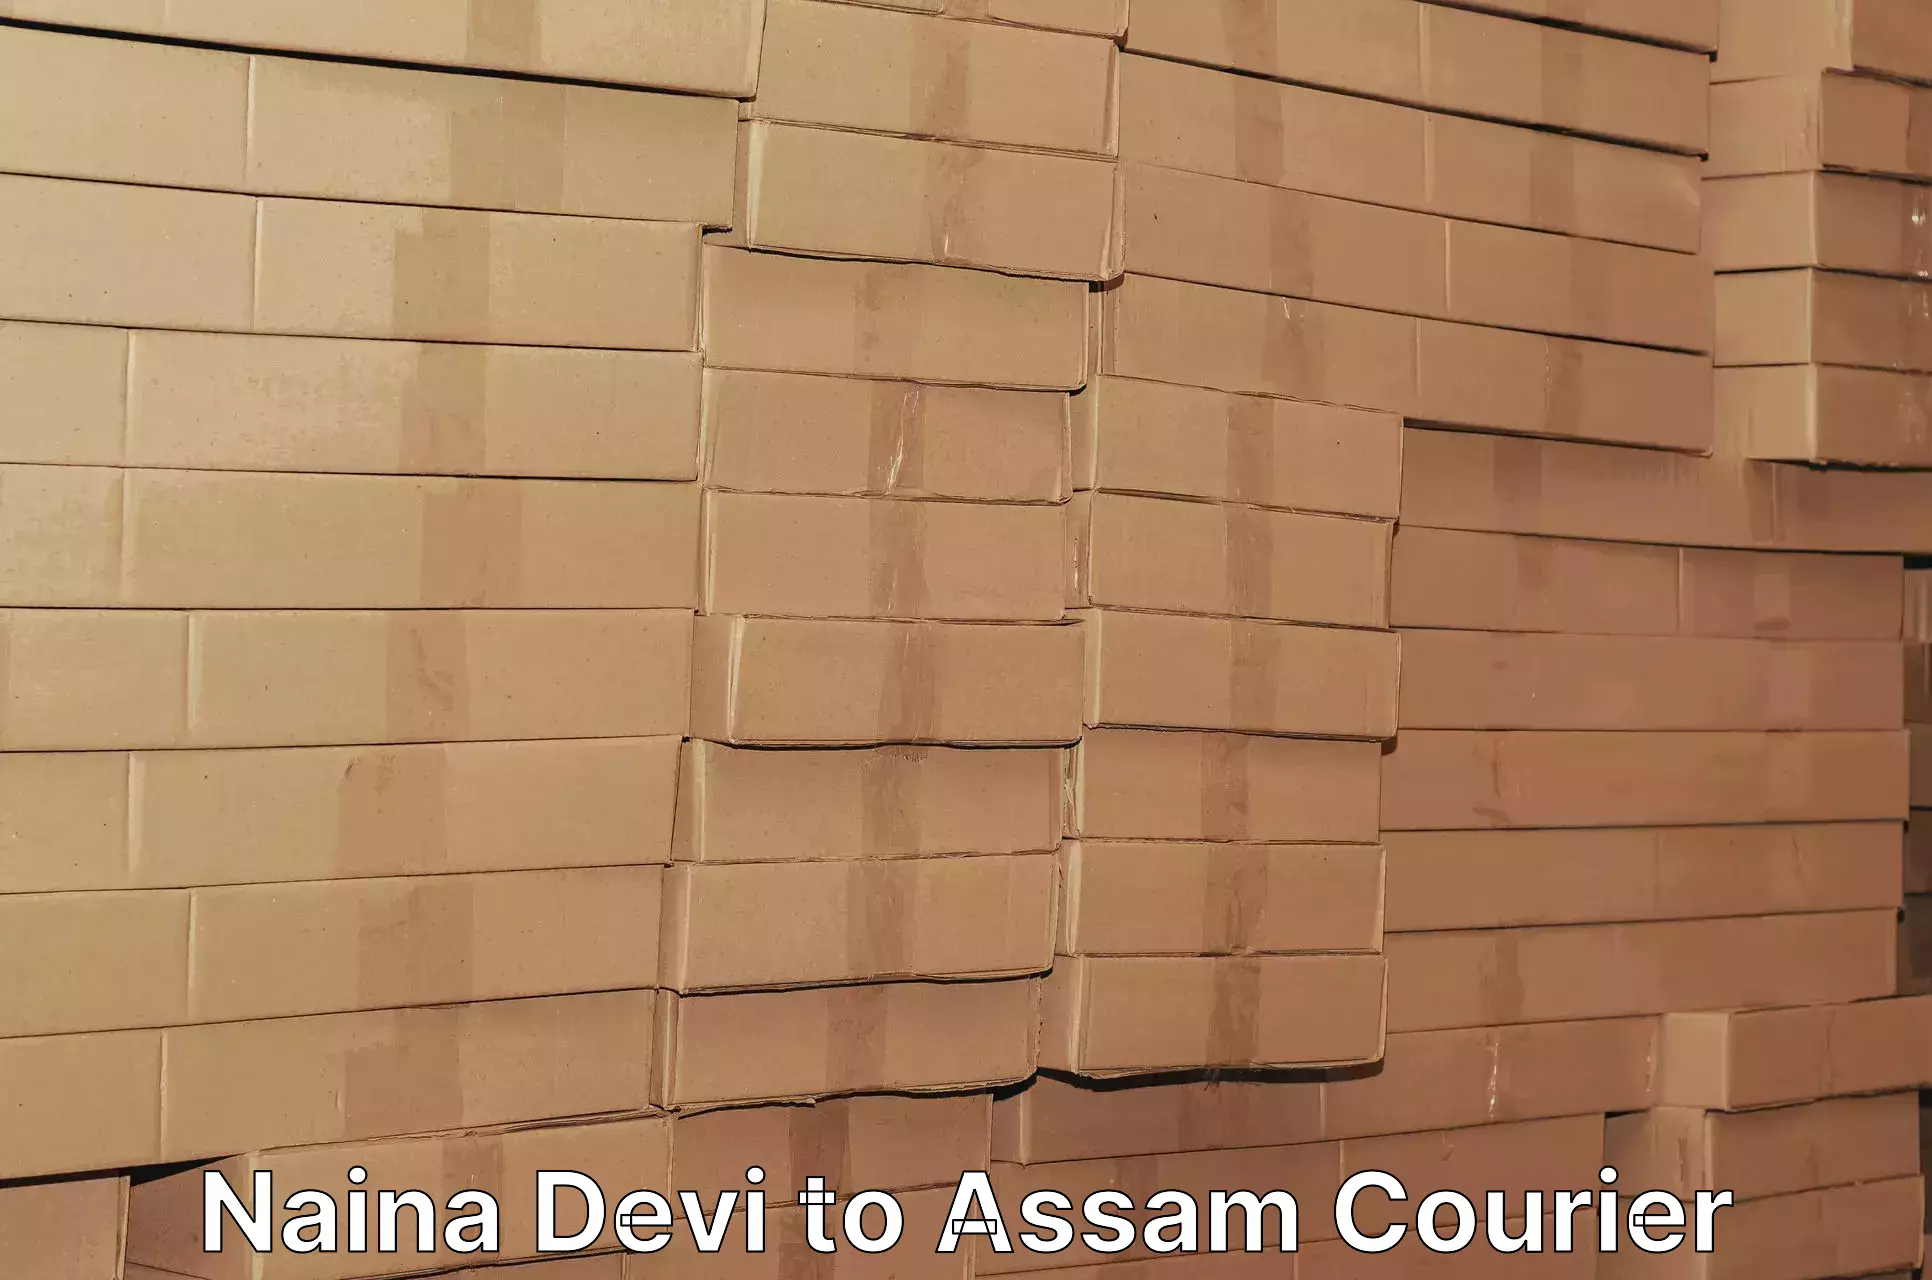 Efficient logistics management Naina Devi to Assam